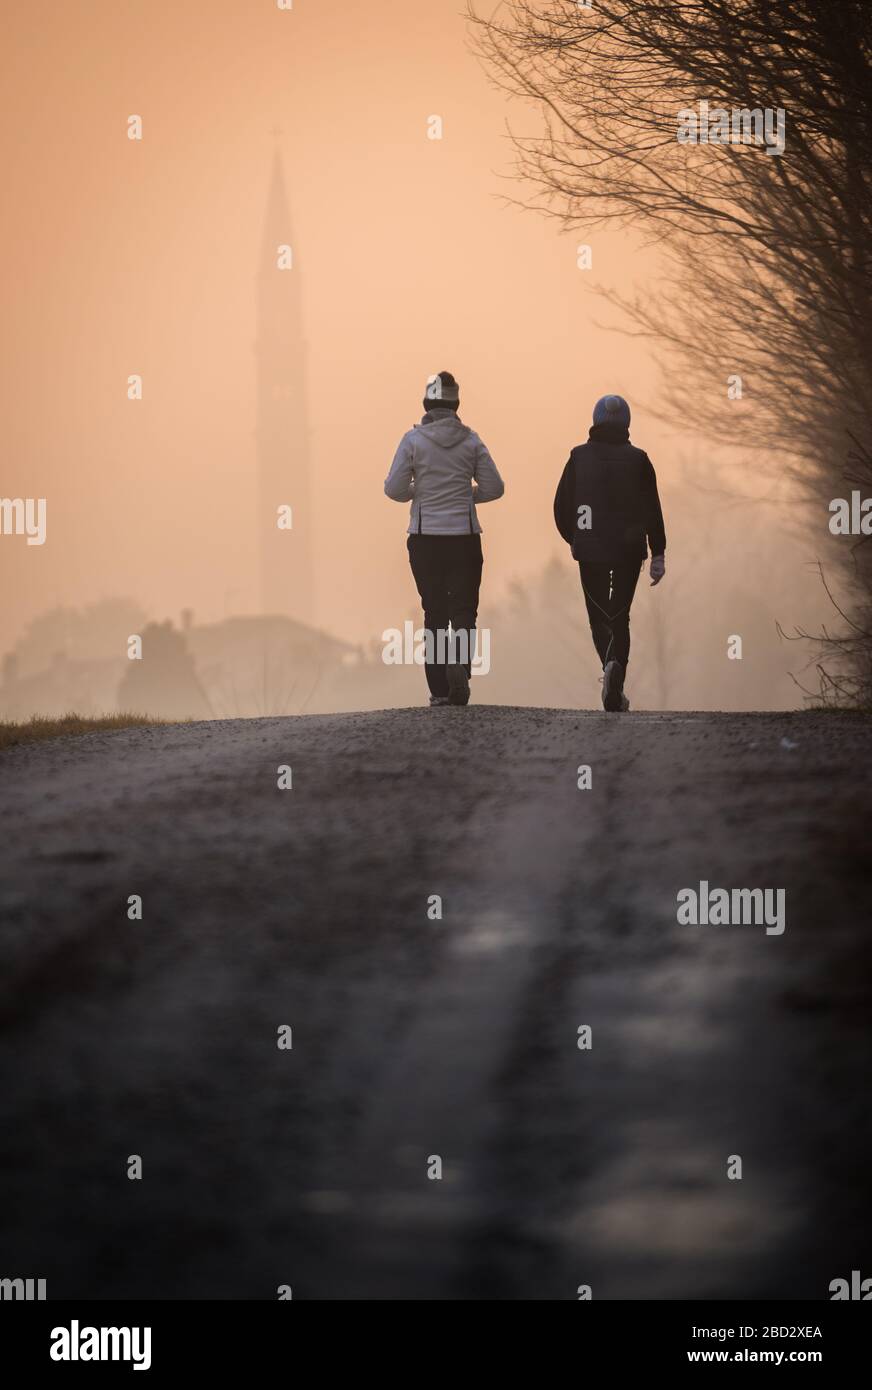 Primo piano di due ragazze che camminano giù una strada sterrata nella luce del mattino presto, con un villaggio lontano coperto di foschia Foto Stock